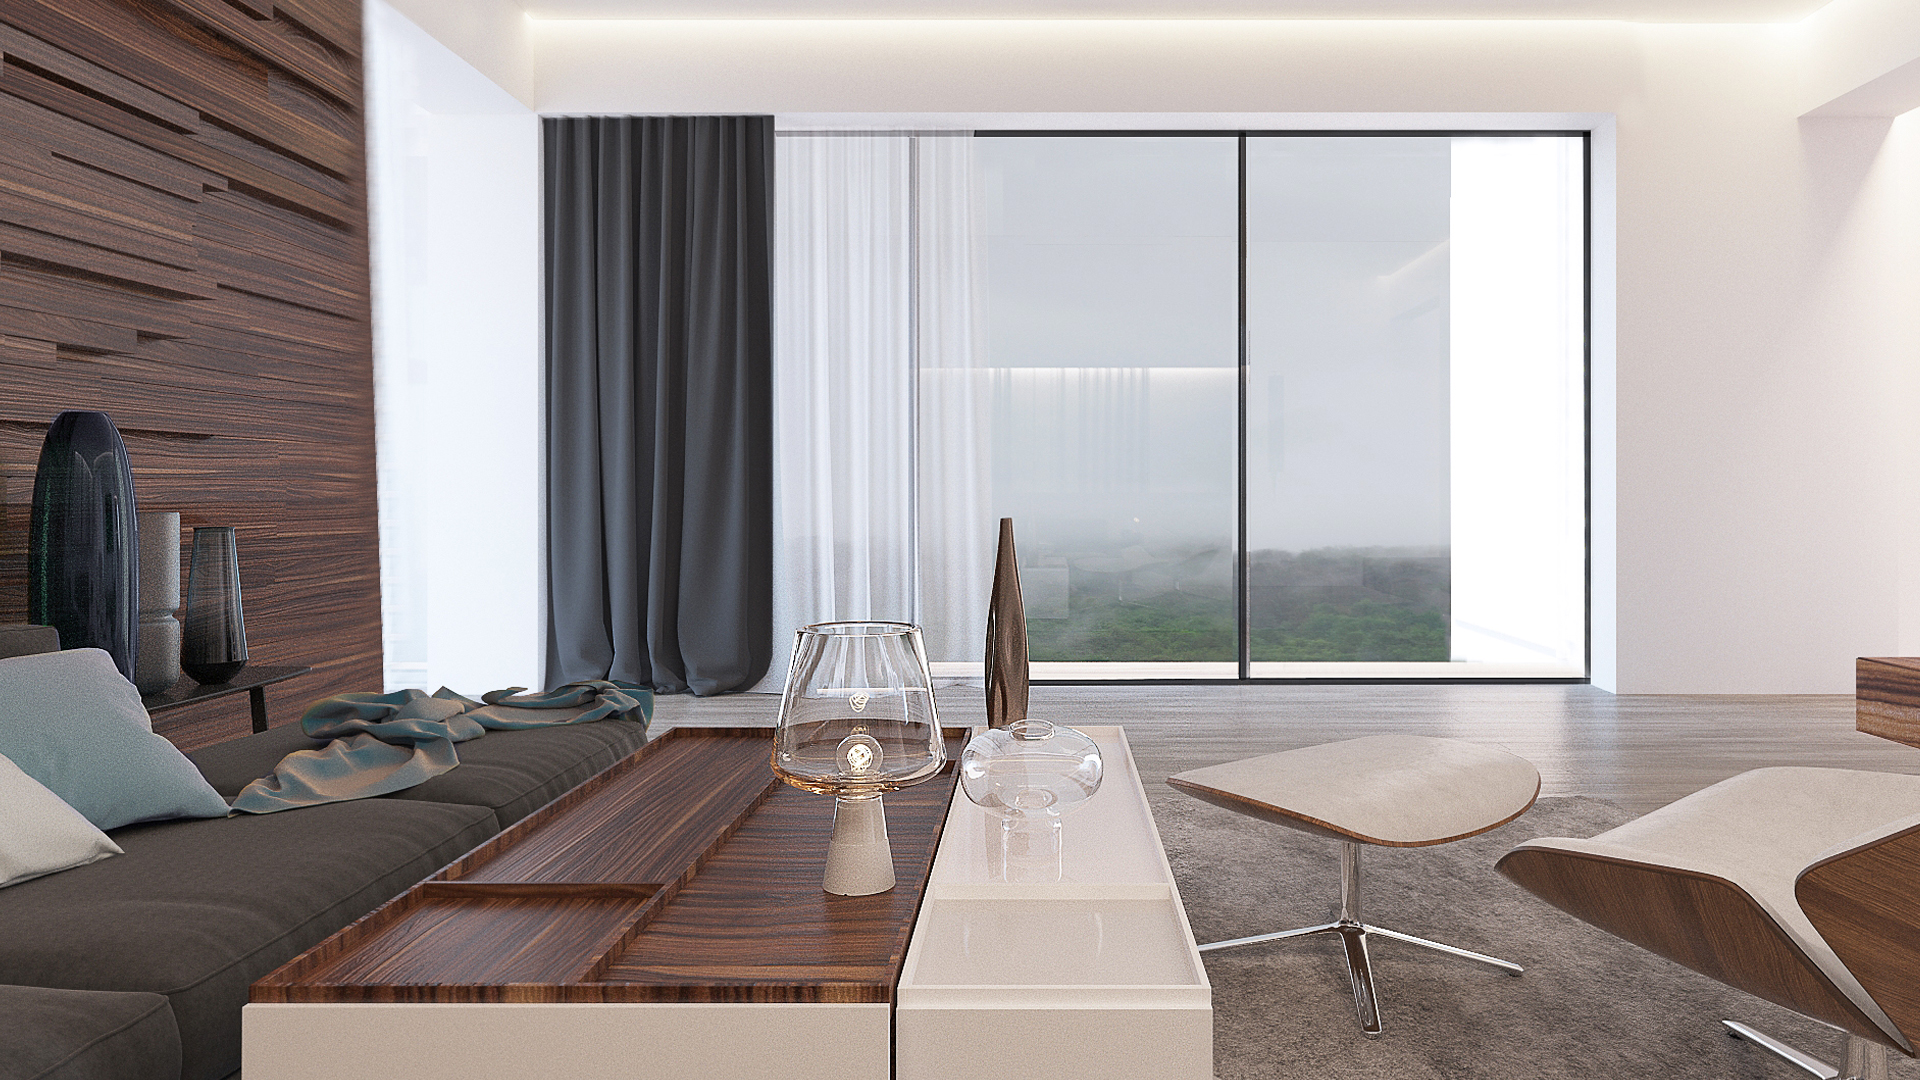 Окна минимализм. Pianoforte 200 VD панорамные окна. Гостиная с панорамными окнами. Интерьер квартиры с панорамными окнами. Студия с панорамными окнами.